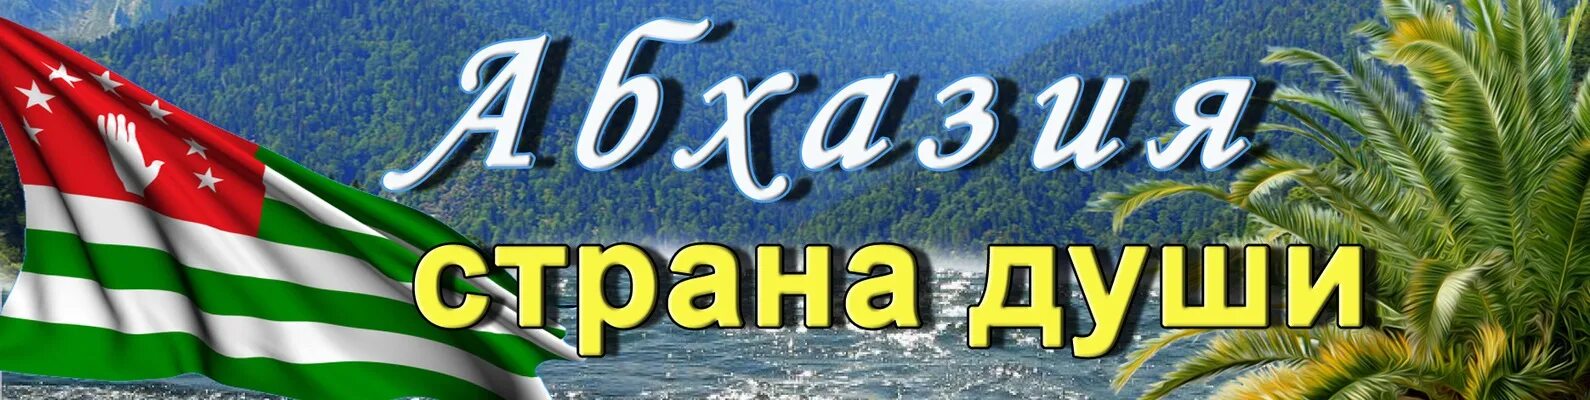 Песня страна души. Абхазия надпись. Абхазия Страна души. Абхазия надпись красивая. Абхазия фото с надписью.